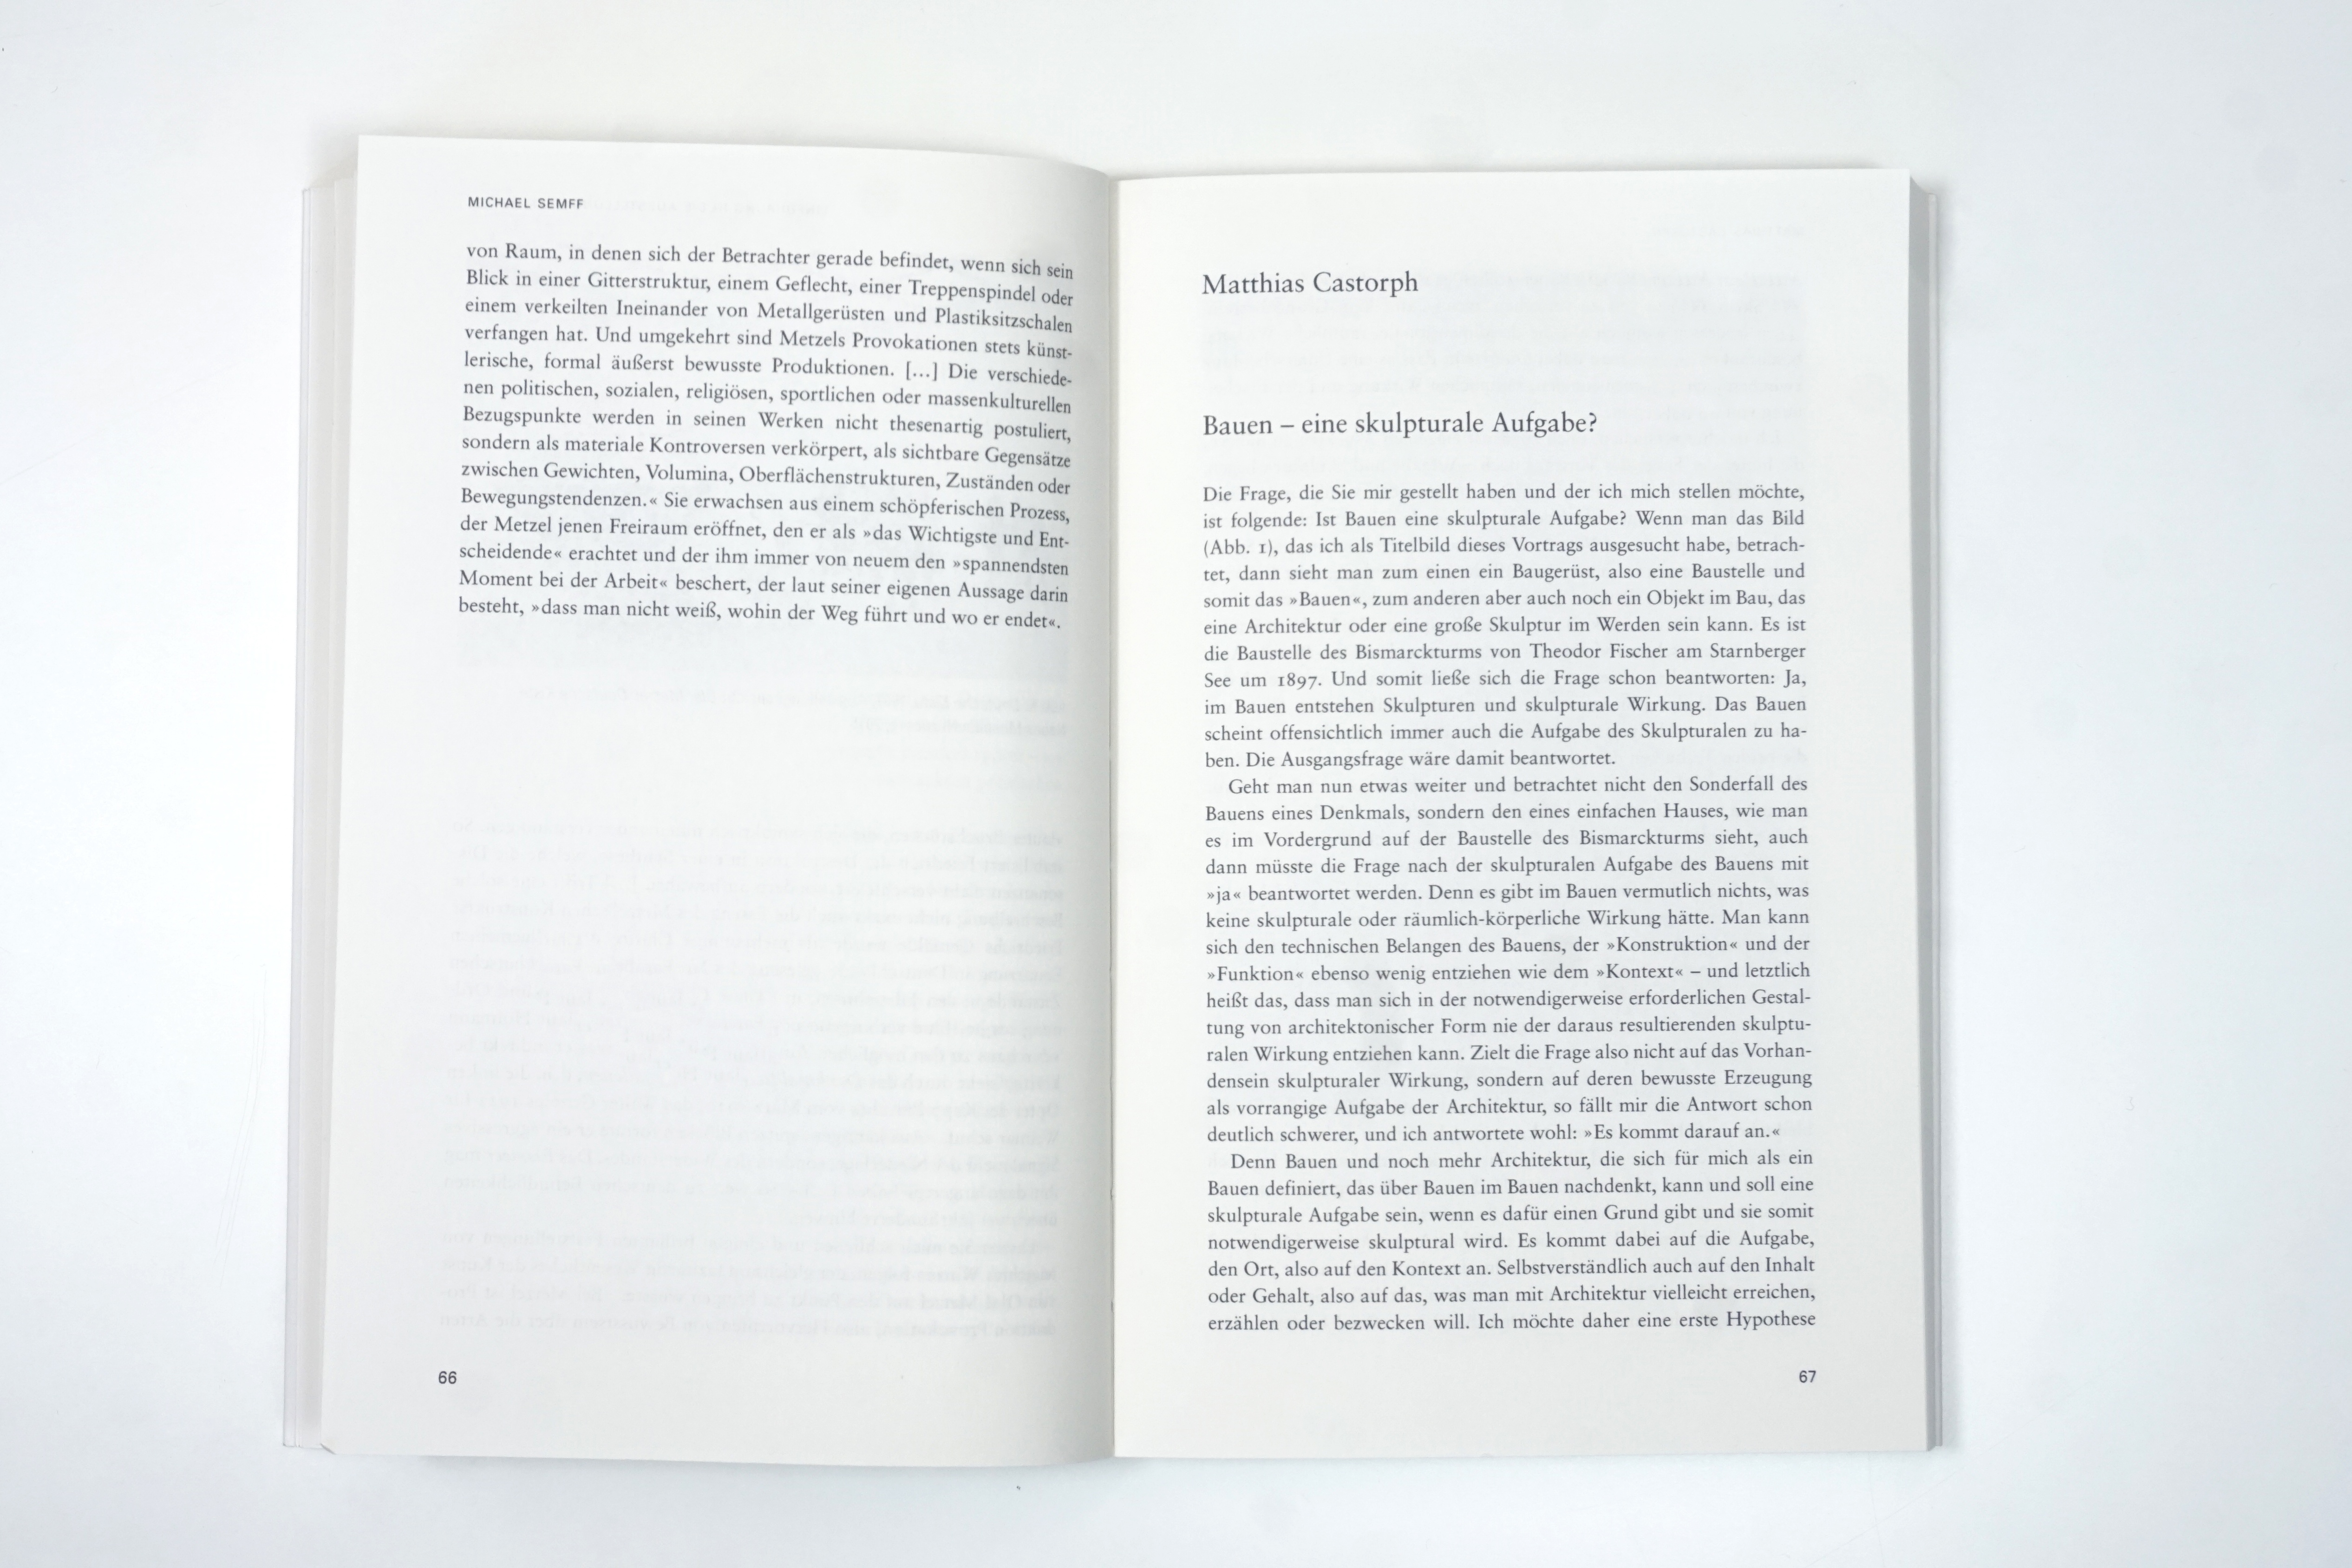 Jahrbuch35 Bayrische Akademie der Schönen Künste Matthias Castorph Text Veröffentlichung Wallstein Verlag 2022 Lehmann Tabillion Castorph Architektur Goetheplatz 1 München